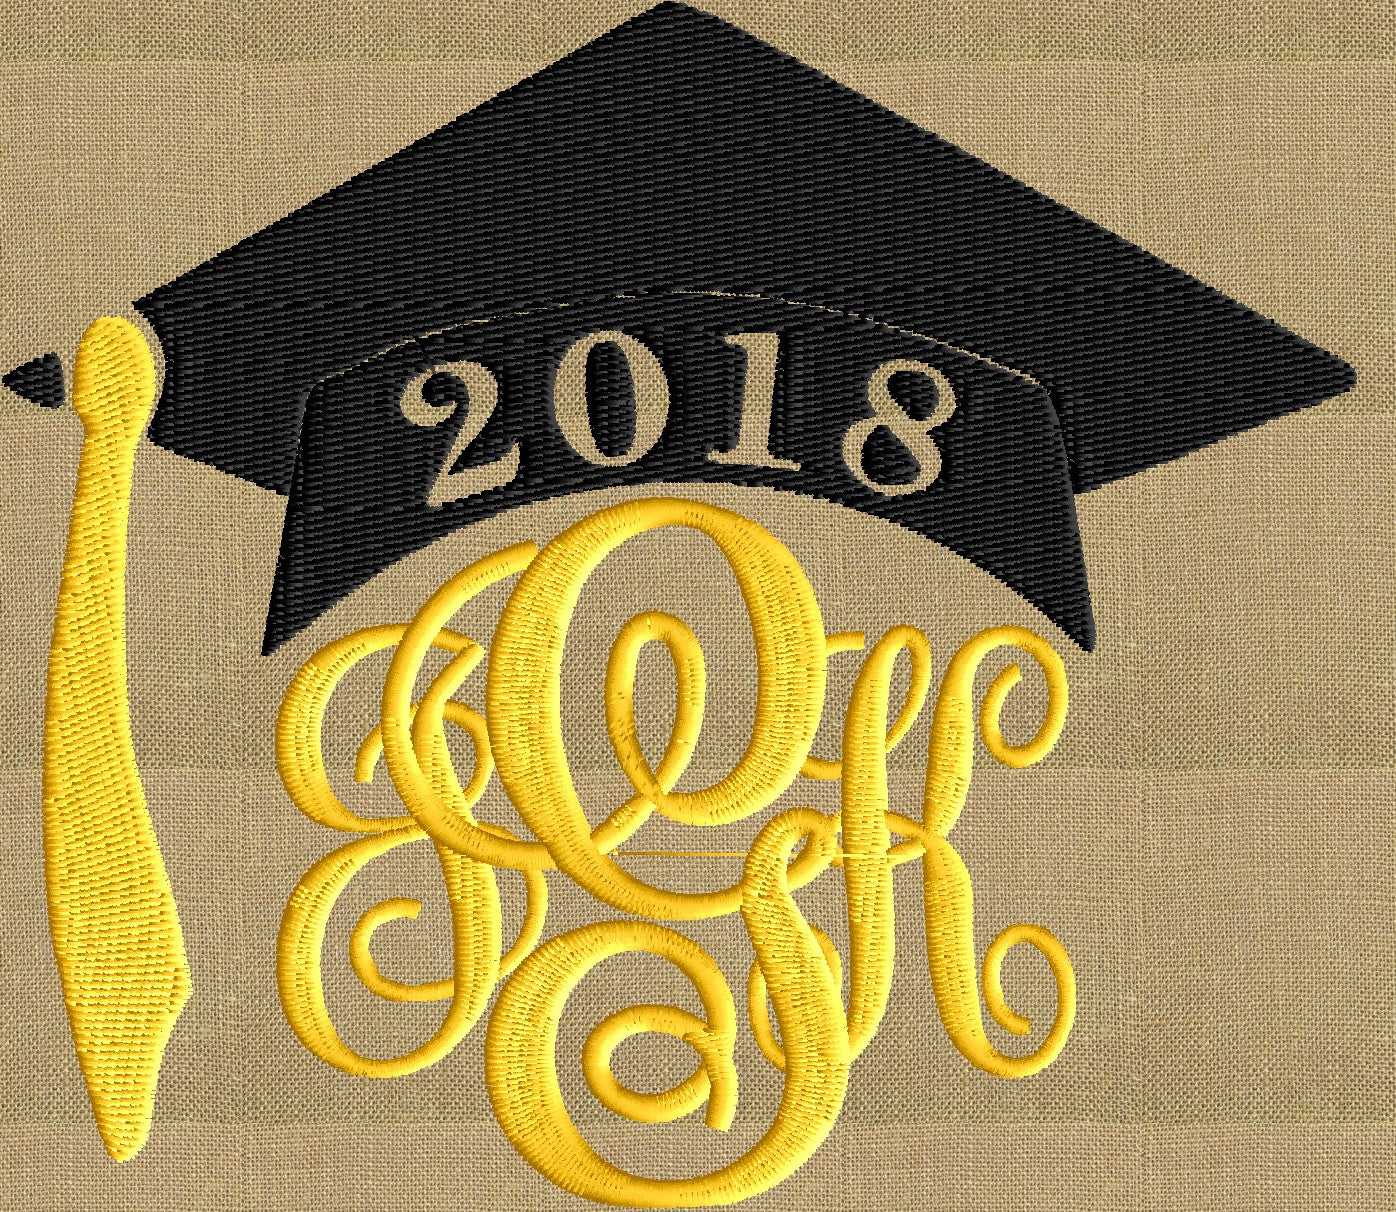 Graduation Cap Hat 2018 Frame Monogram Design -Font not included - EMBROIDERY DESIGN FILE - Instant download - Vp3 Dst Exp Jef Pes formats